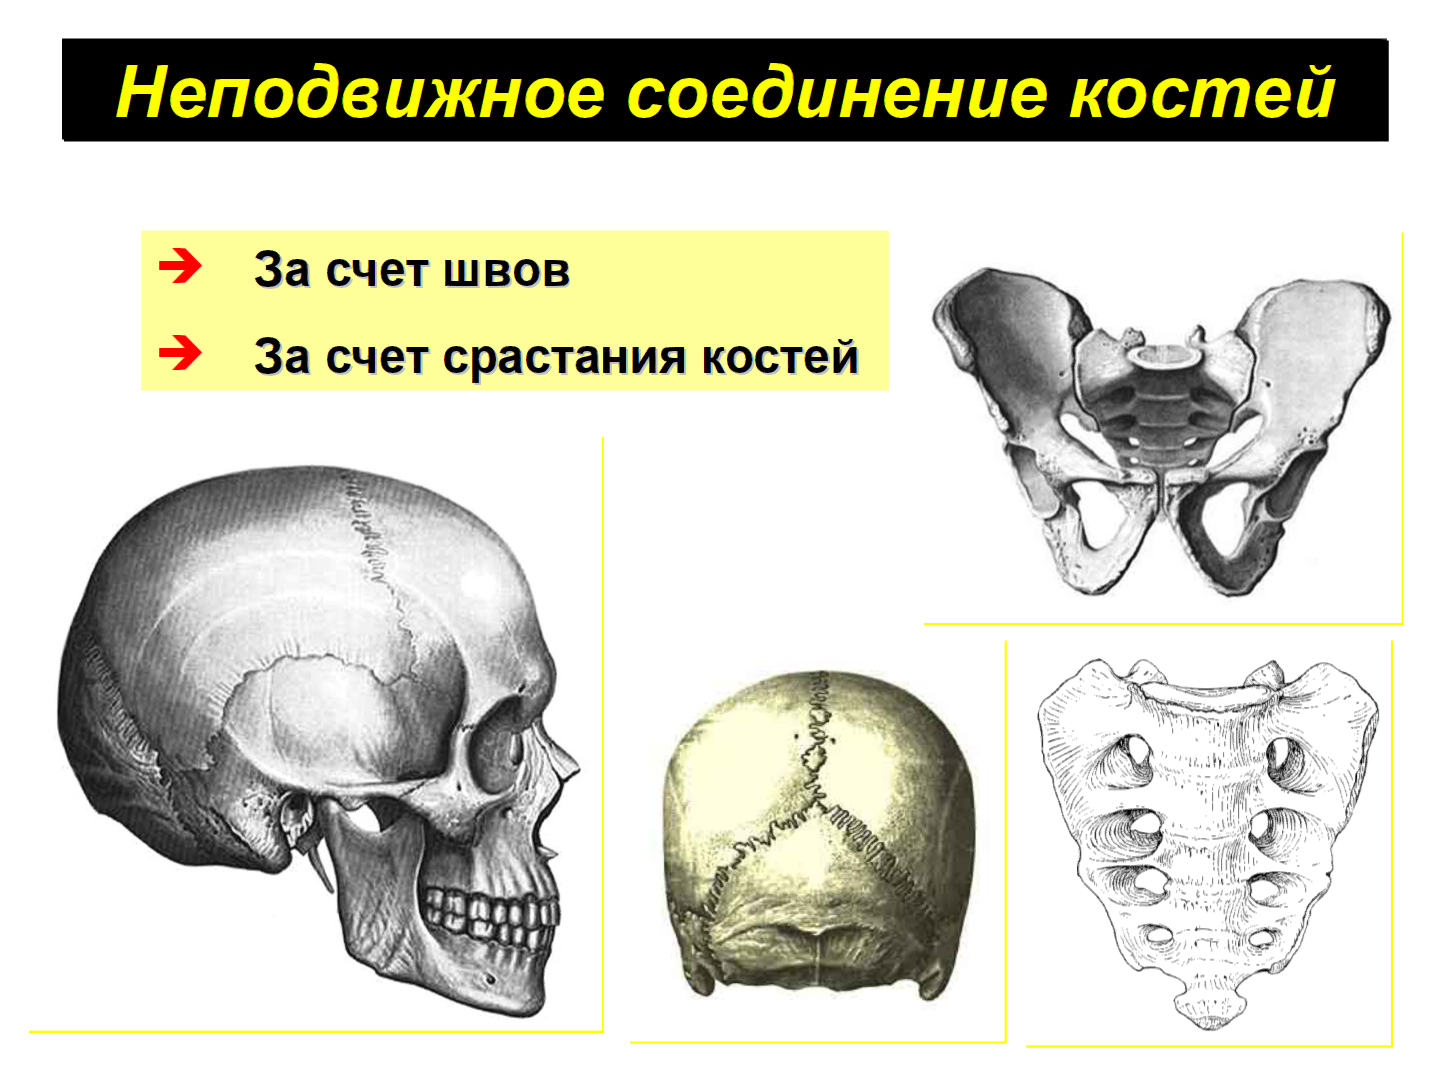 Кости скелета человека соединены неподвижно. Неподвижные полуподвижные и подвижные соединения костей. Кости черепа неподвижные соединения. Кости с неподвижным соединением. Типы соединения костей.